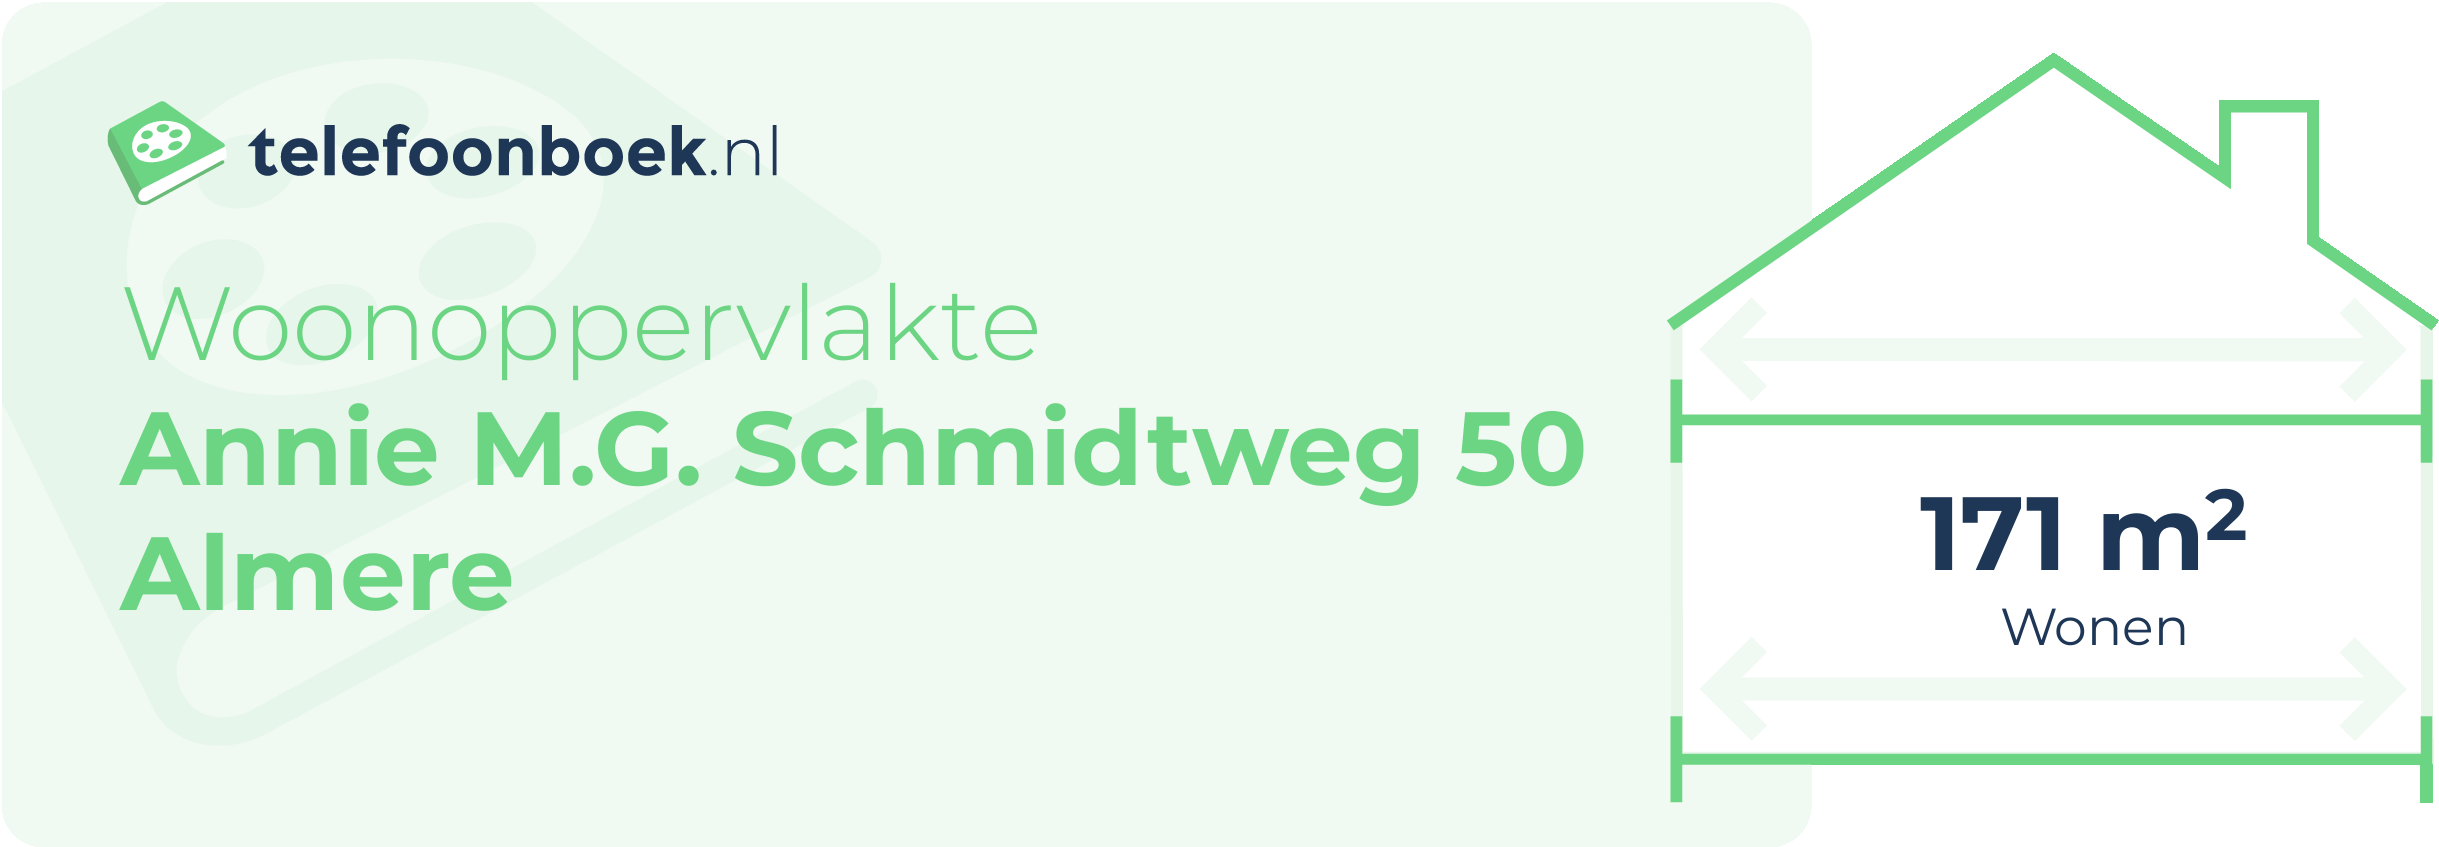 Woonoppervlakte Annie M.G. Schmidtweg 50 Almere